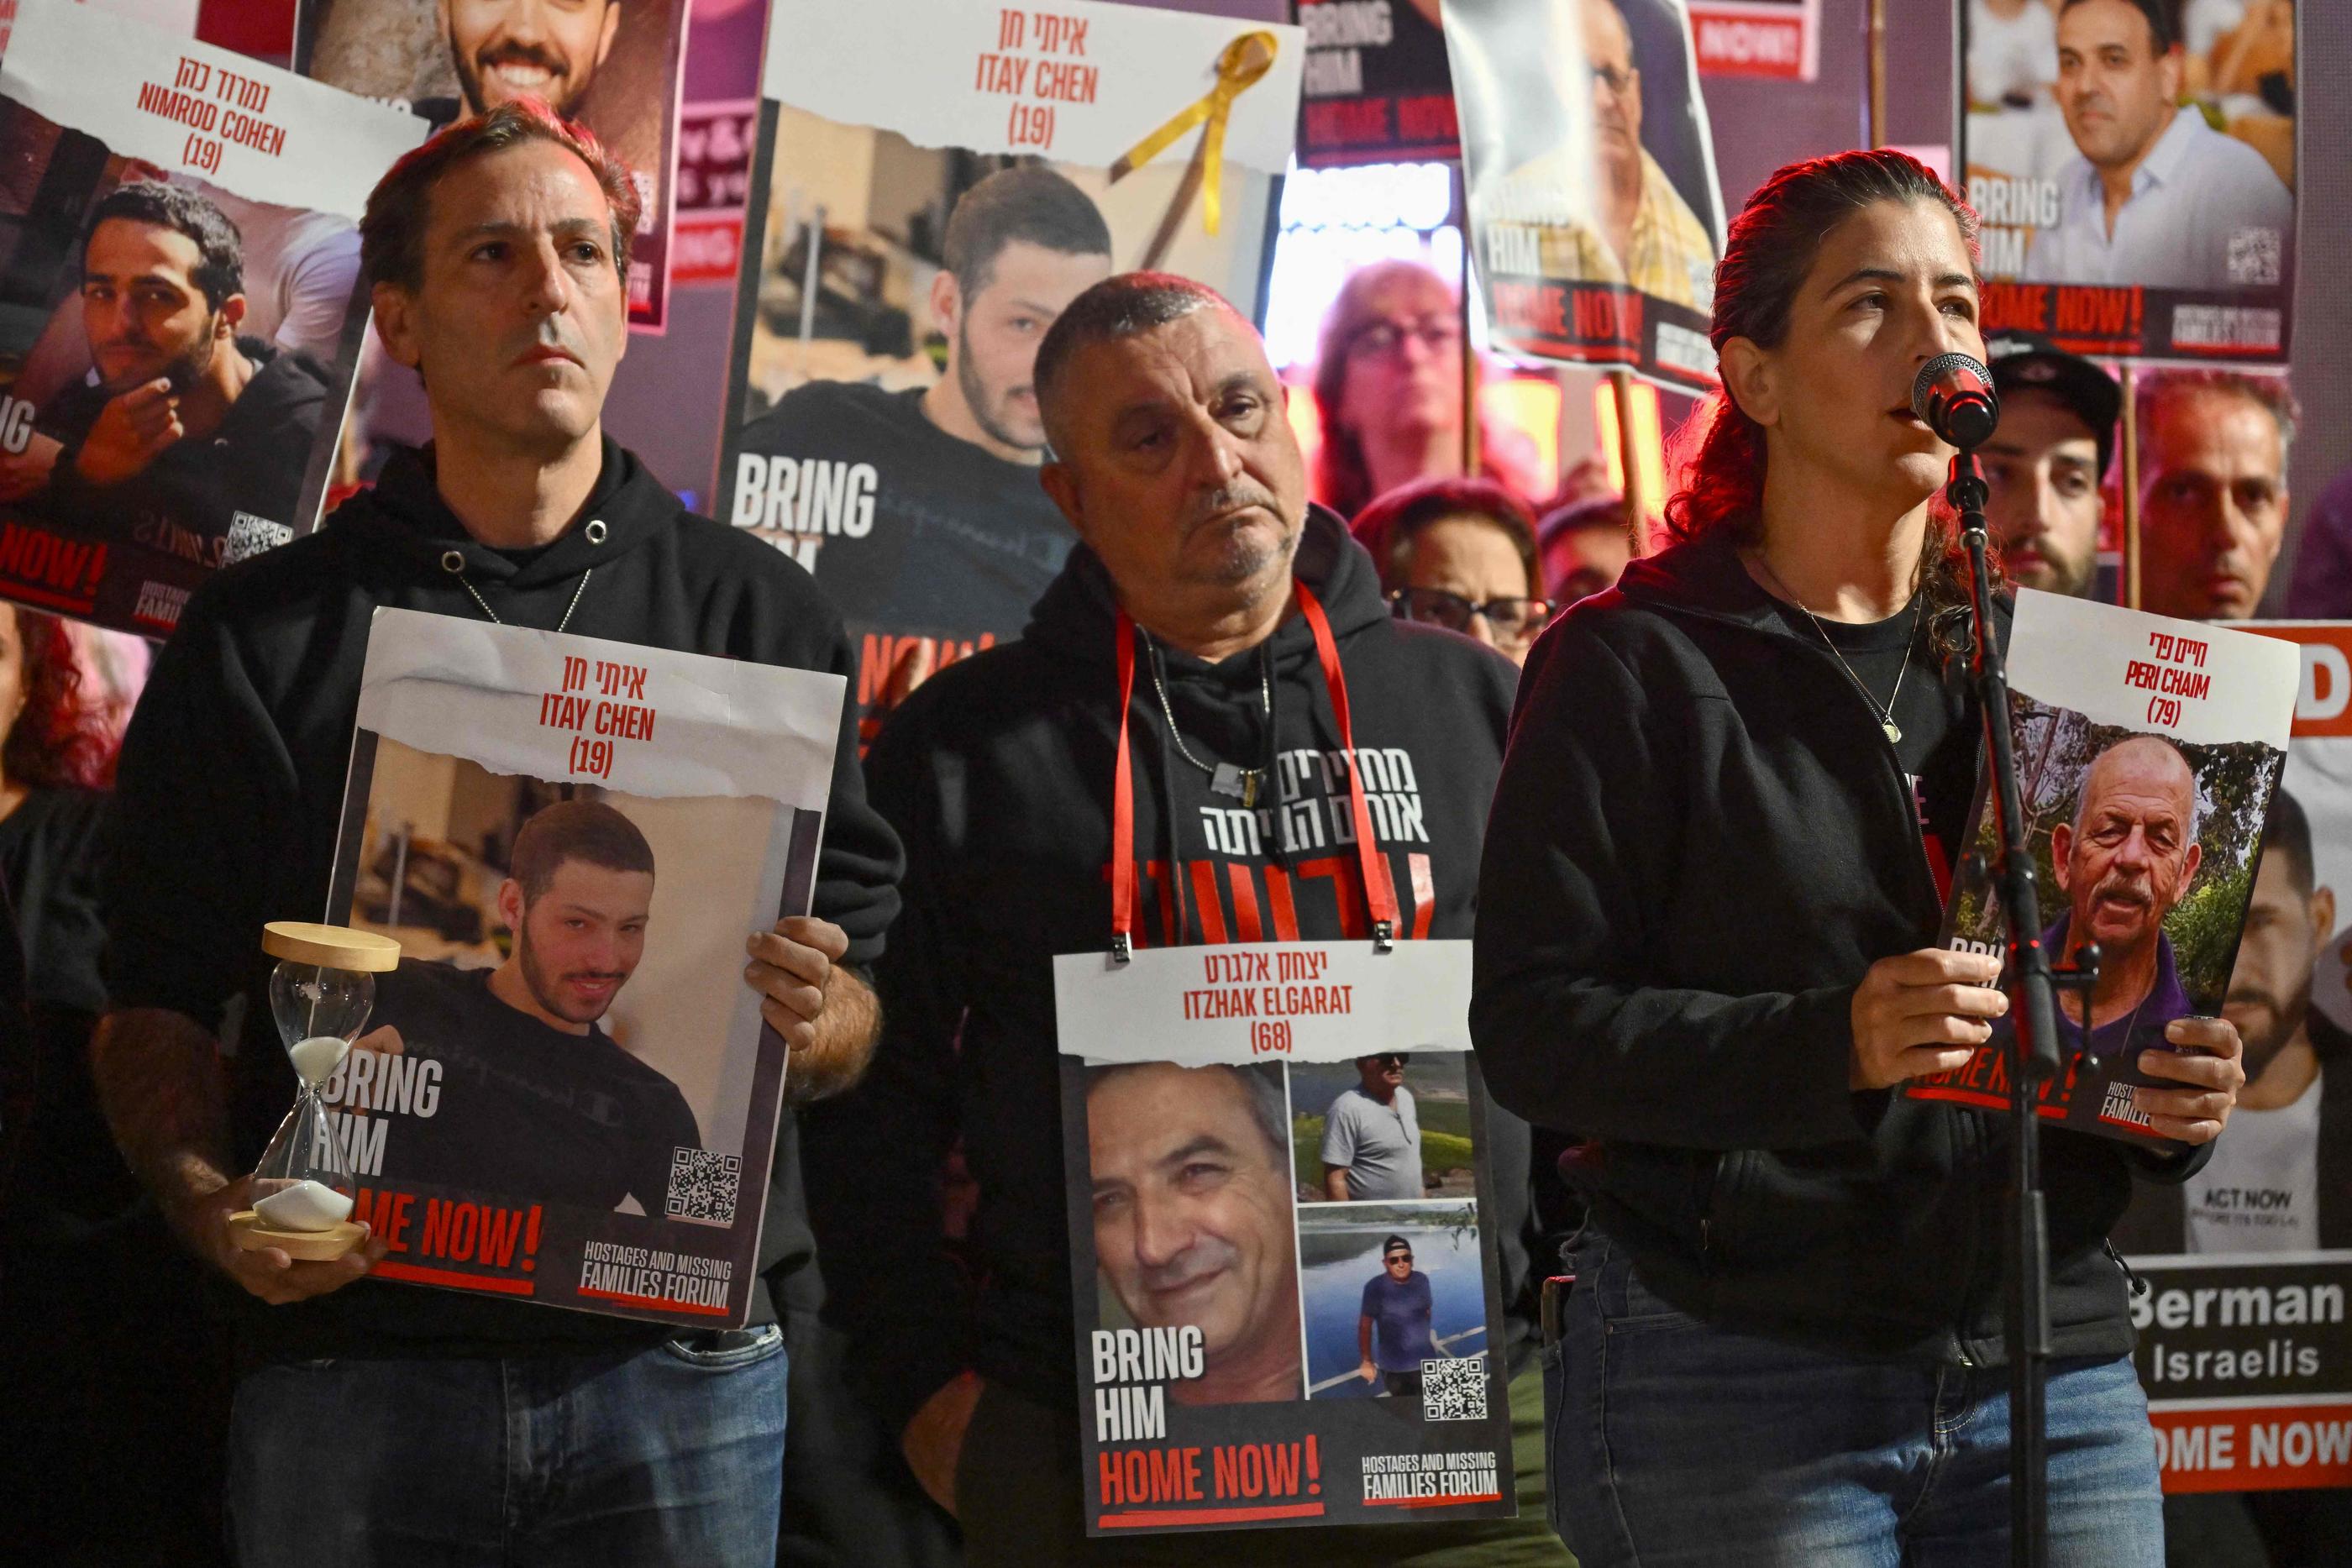 Des proches demandent la libération d'otages détenus par le Hamas, ici à Tel Aviv le 16 décembre. AFP/Alberto Pizzoli